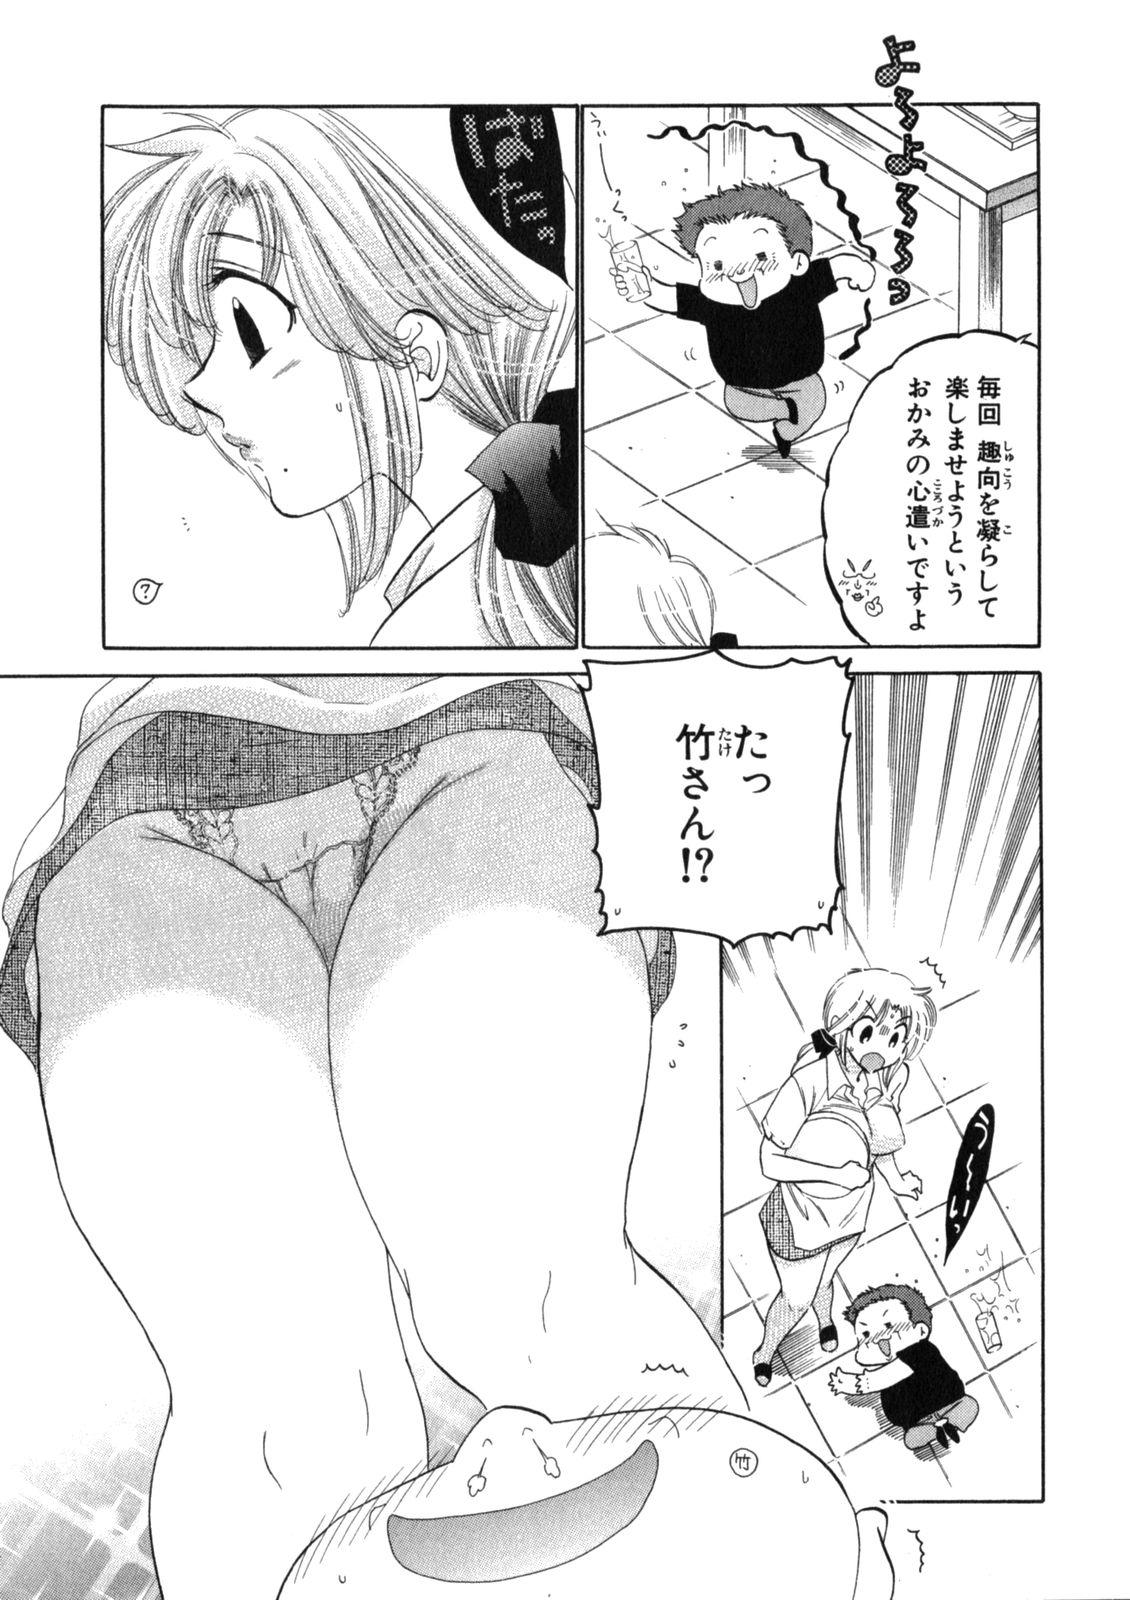 Pasivo Shitamachi Madonna Shokudou 2 Ninfeta - Page 11